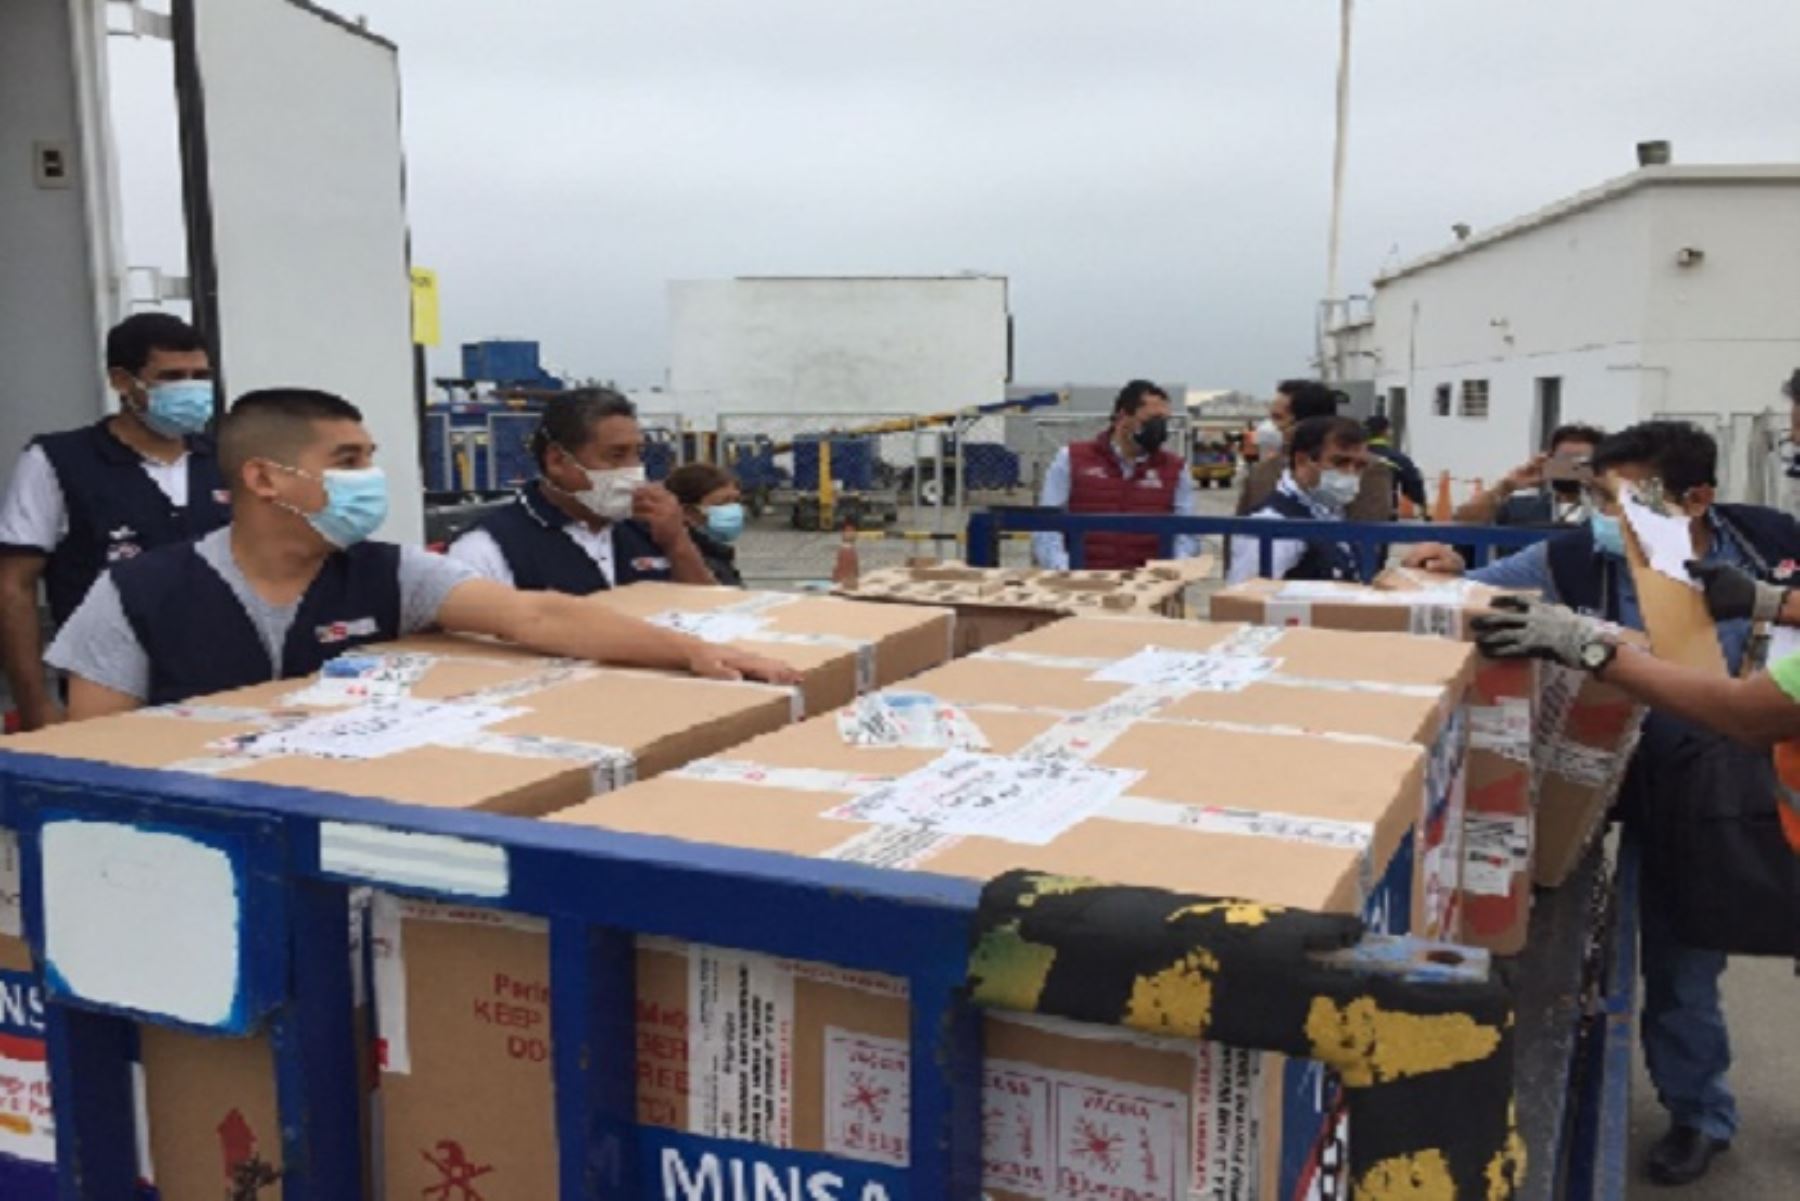 El cargamento del nuevo lote de dosis fue recibido por el gobernador regional de Lambayeque, Luis Díaz Bravo; y el gerente regional de Salud, Alipio Rivas Guevara,  en el aeropuerto de Chiclayo.